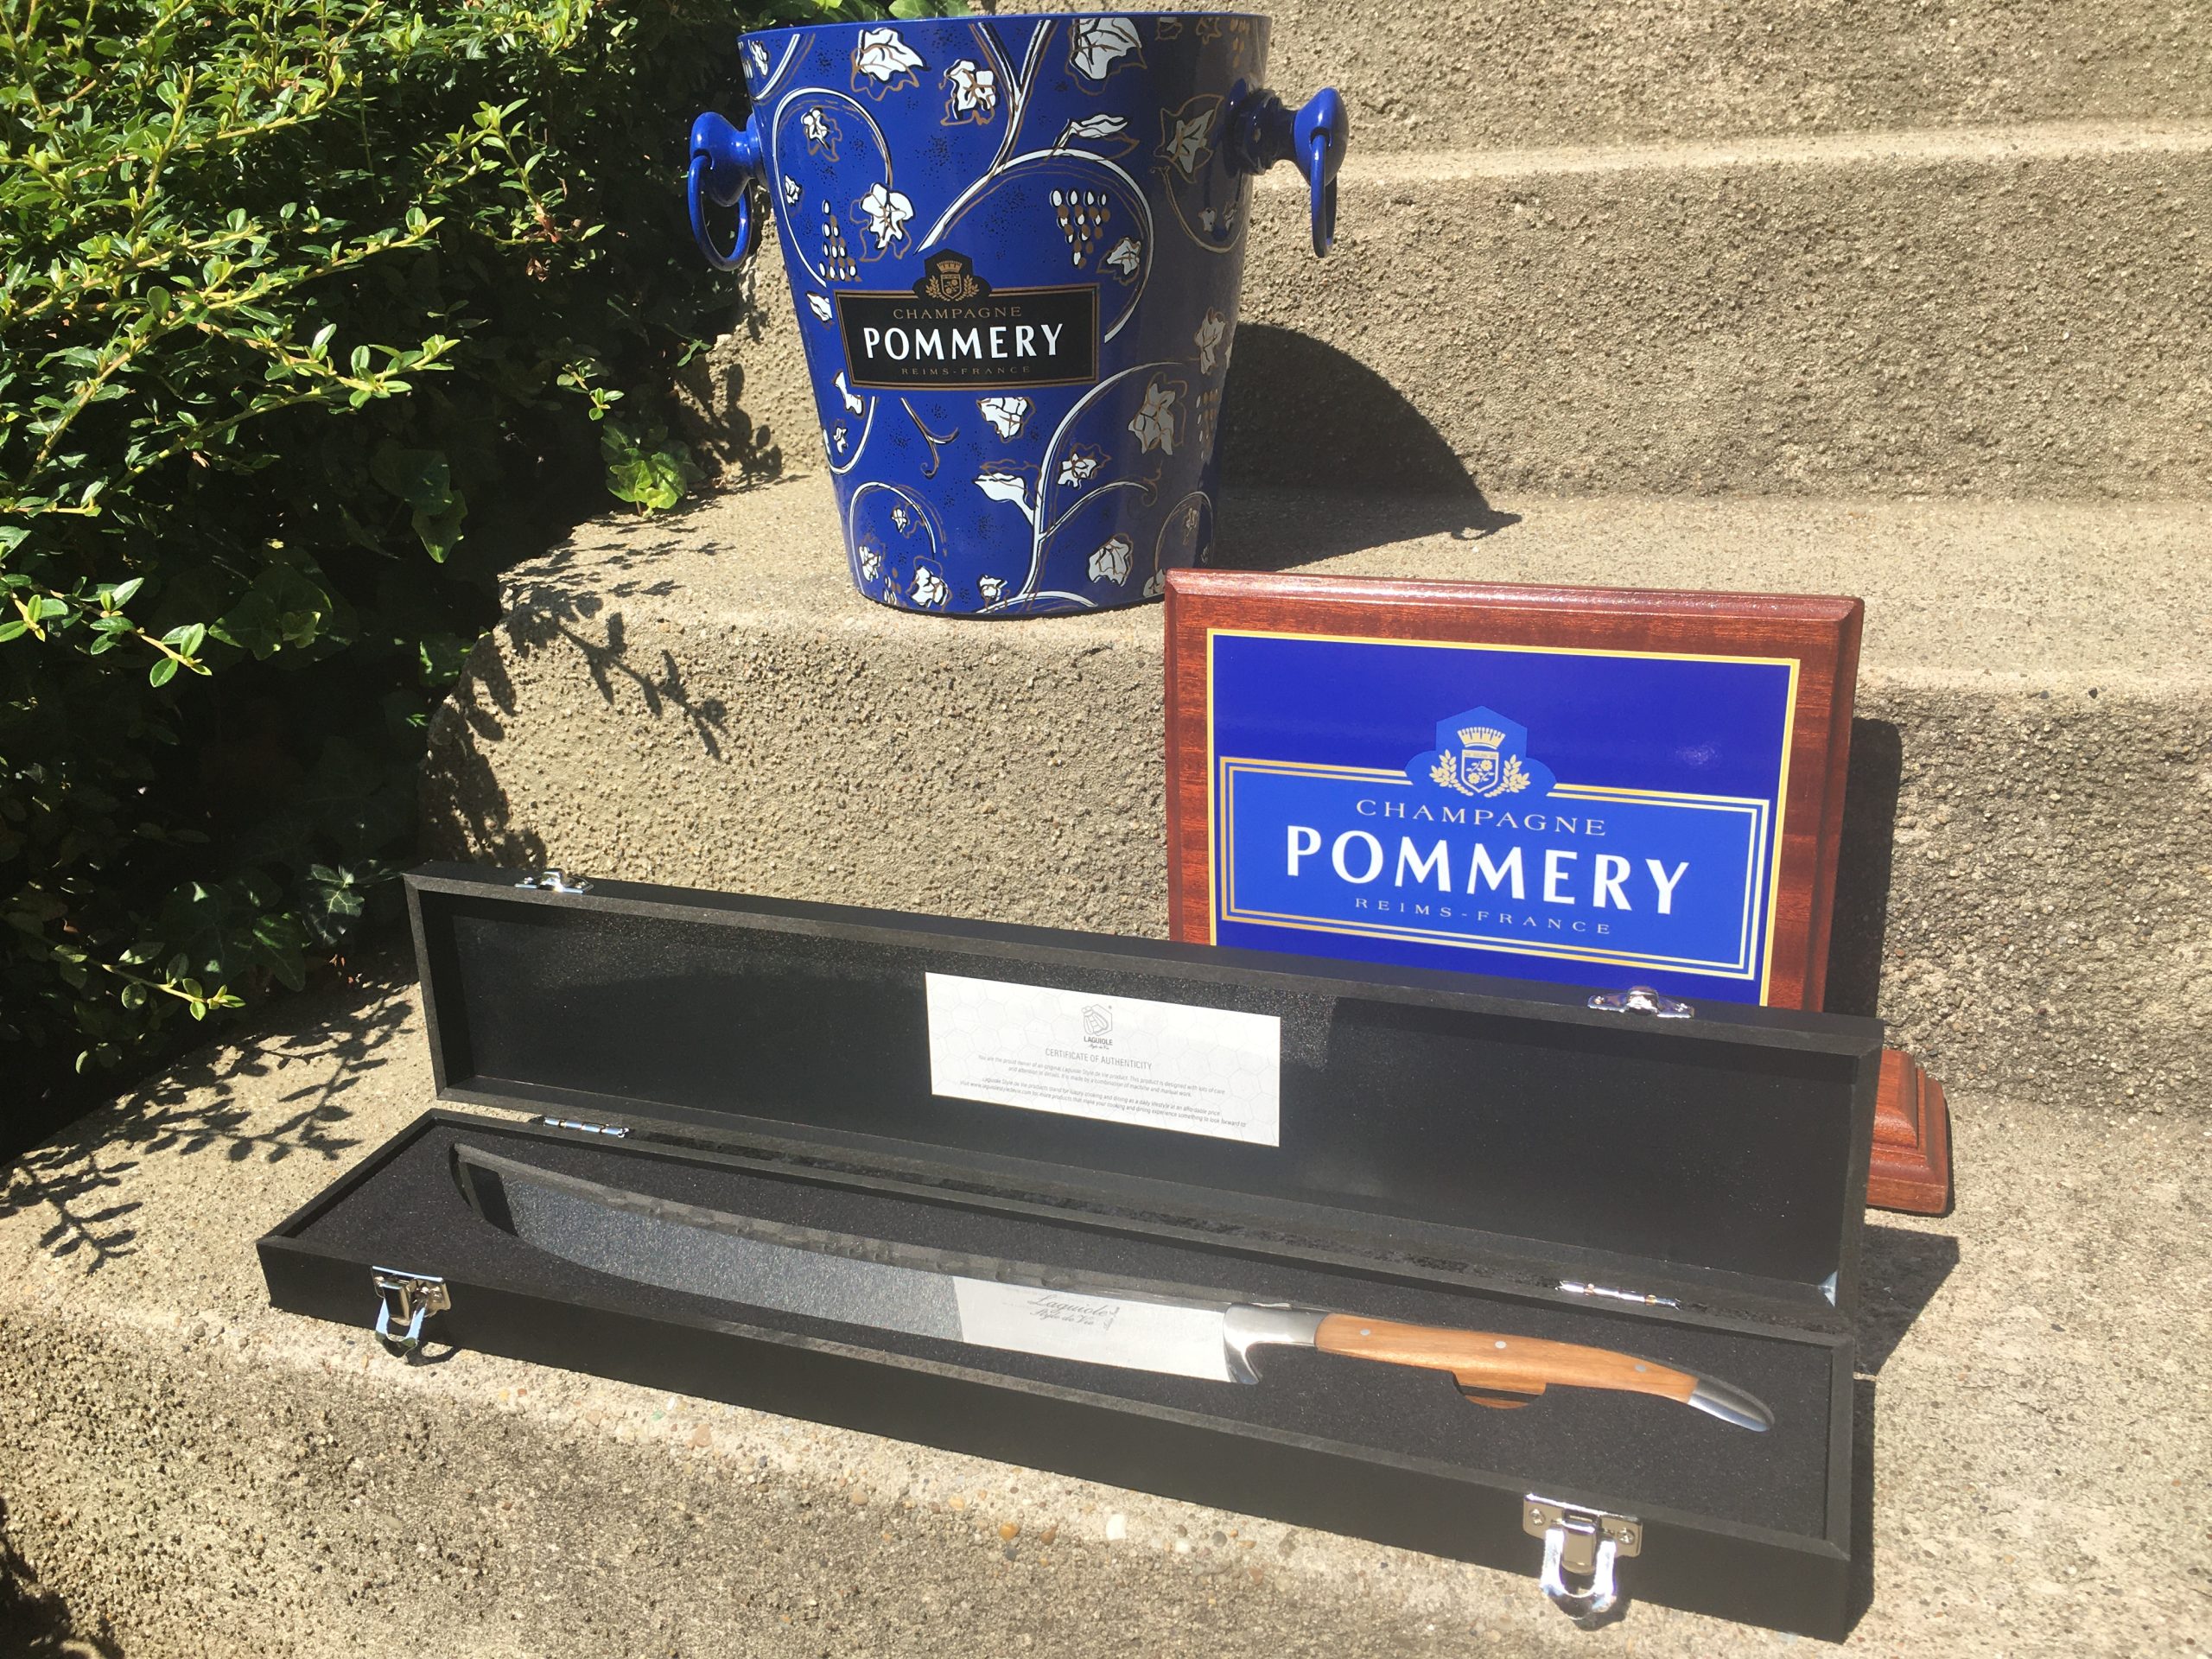 Pommery Champagne ajándék szett (3 db) – 54.800.-Ft